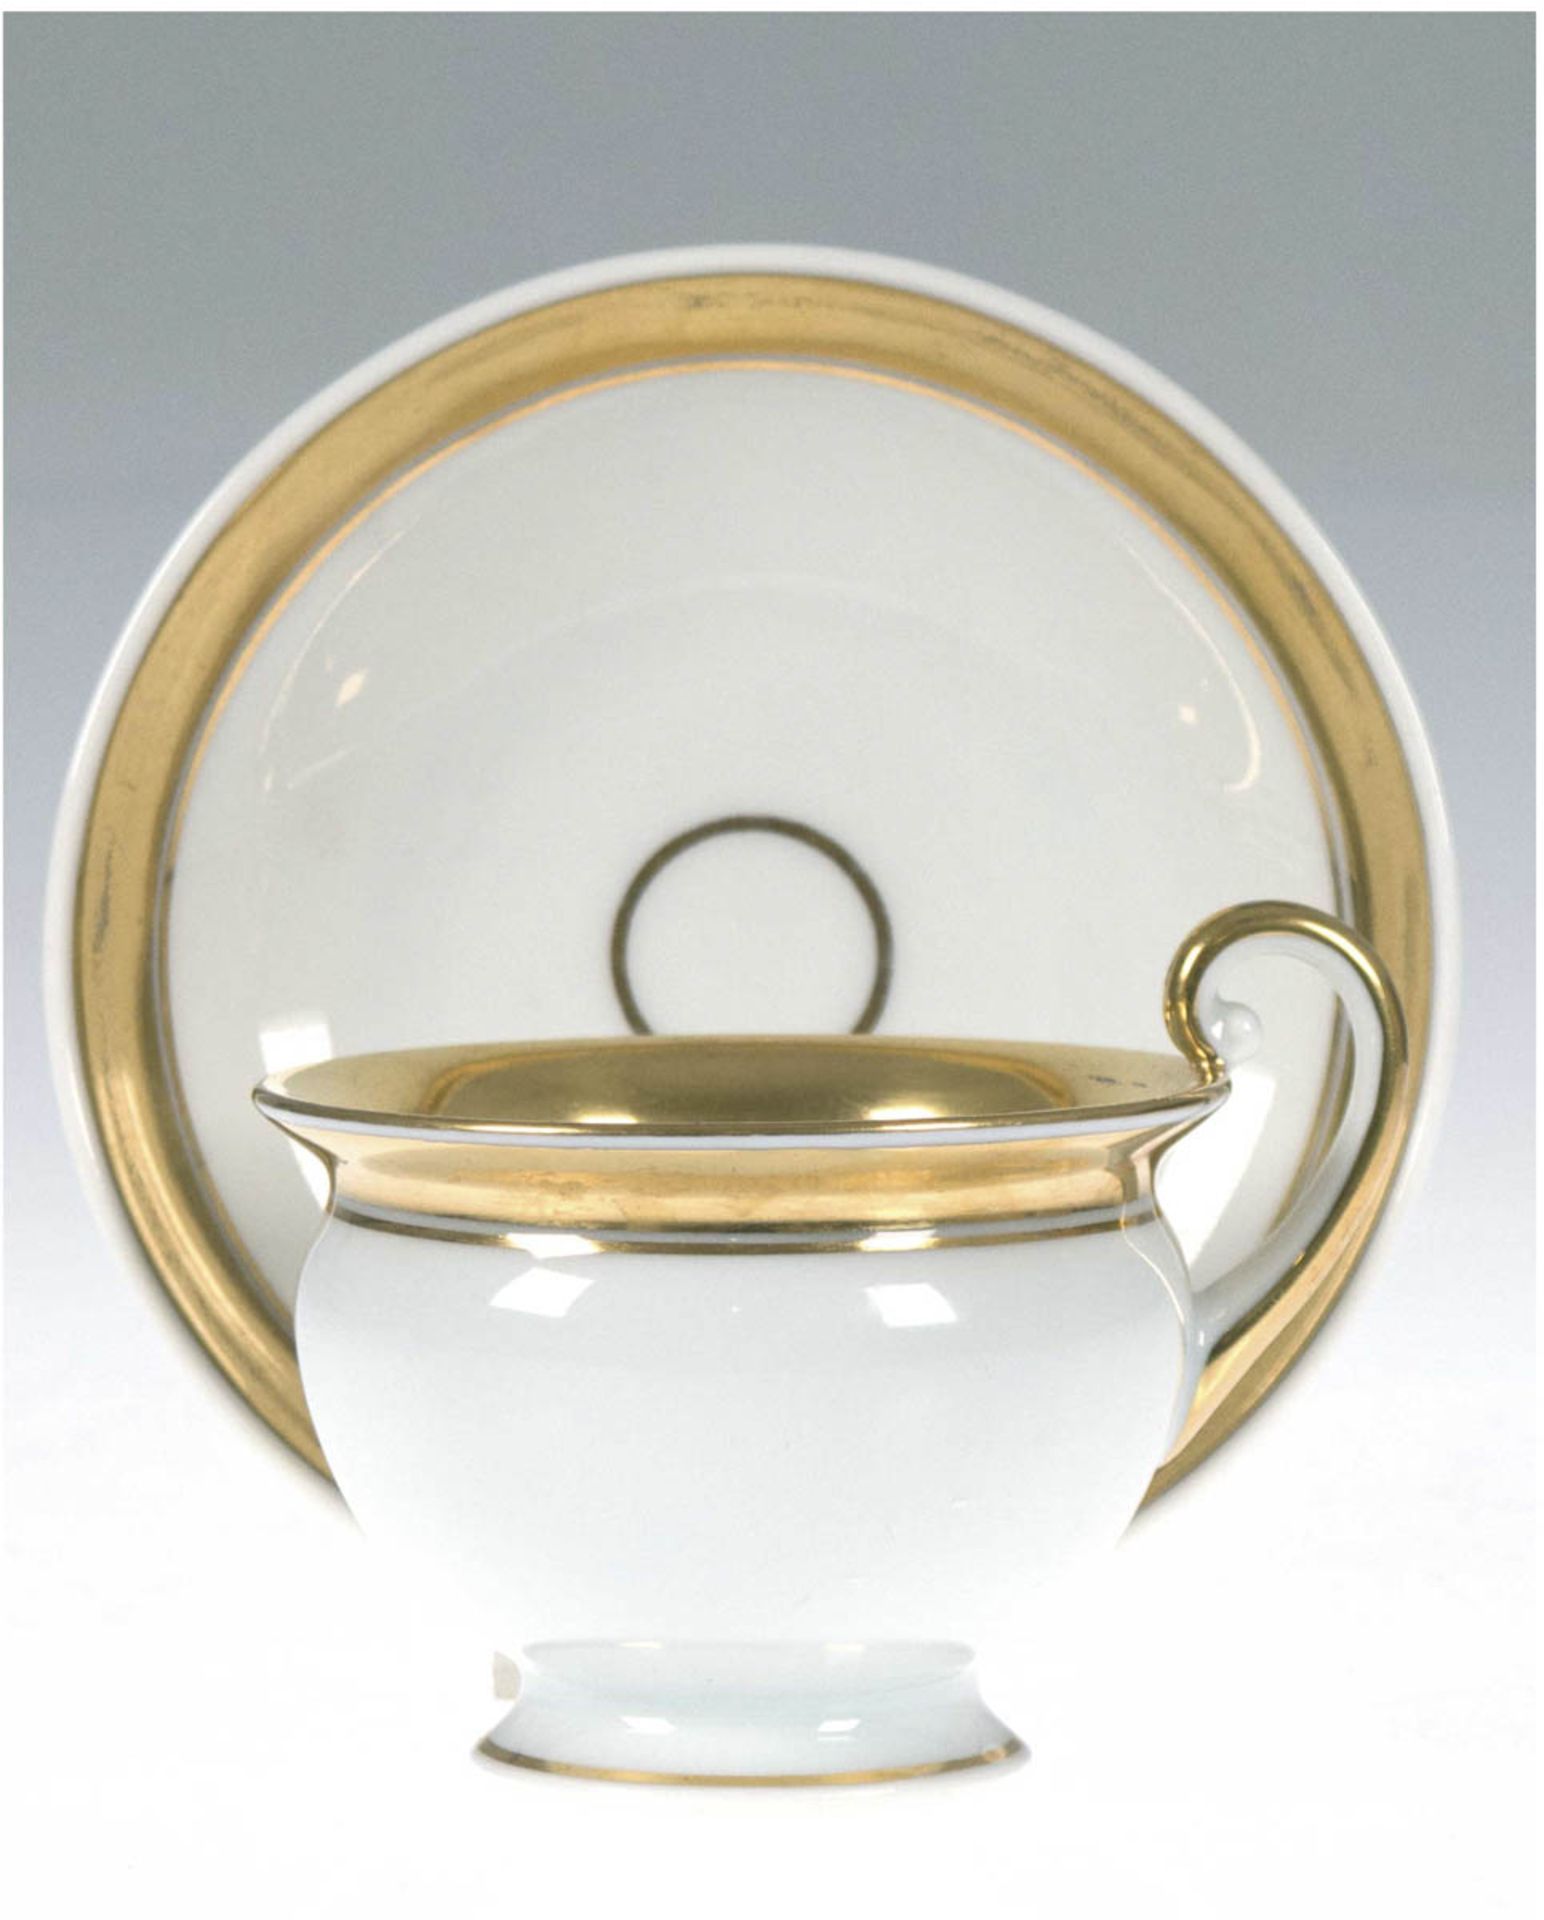 Biedermeier-Tasse mit UT, Fürstenberg, weiß mit Goldrändern, gebauchte Form mitausgestelltem